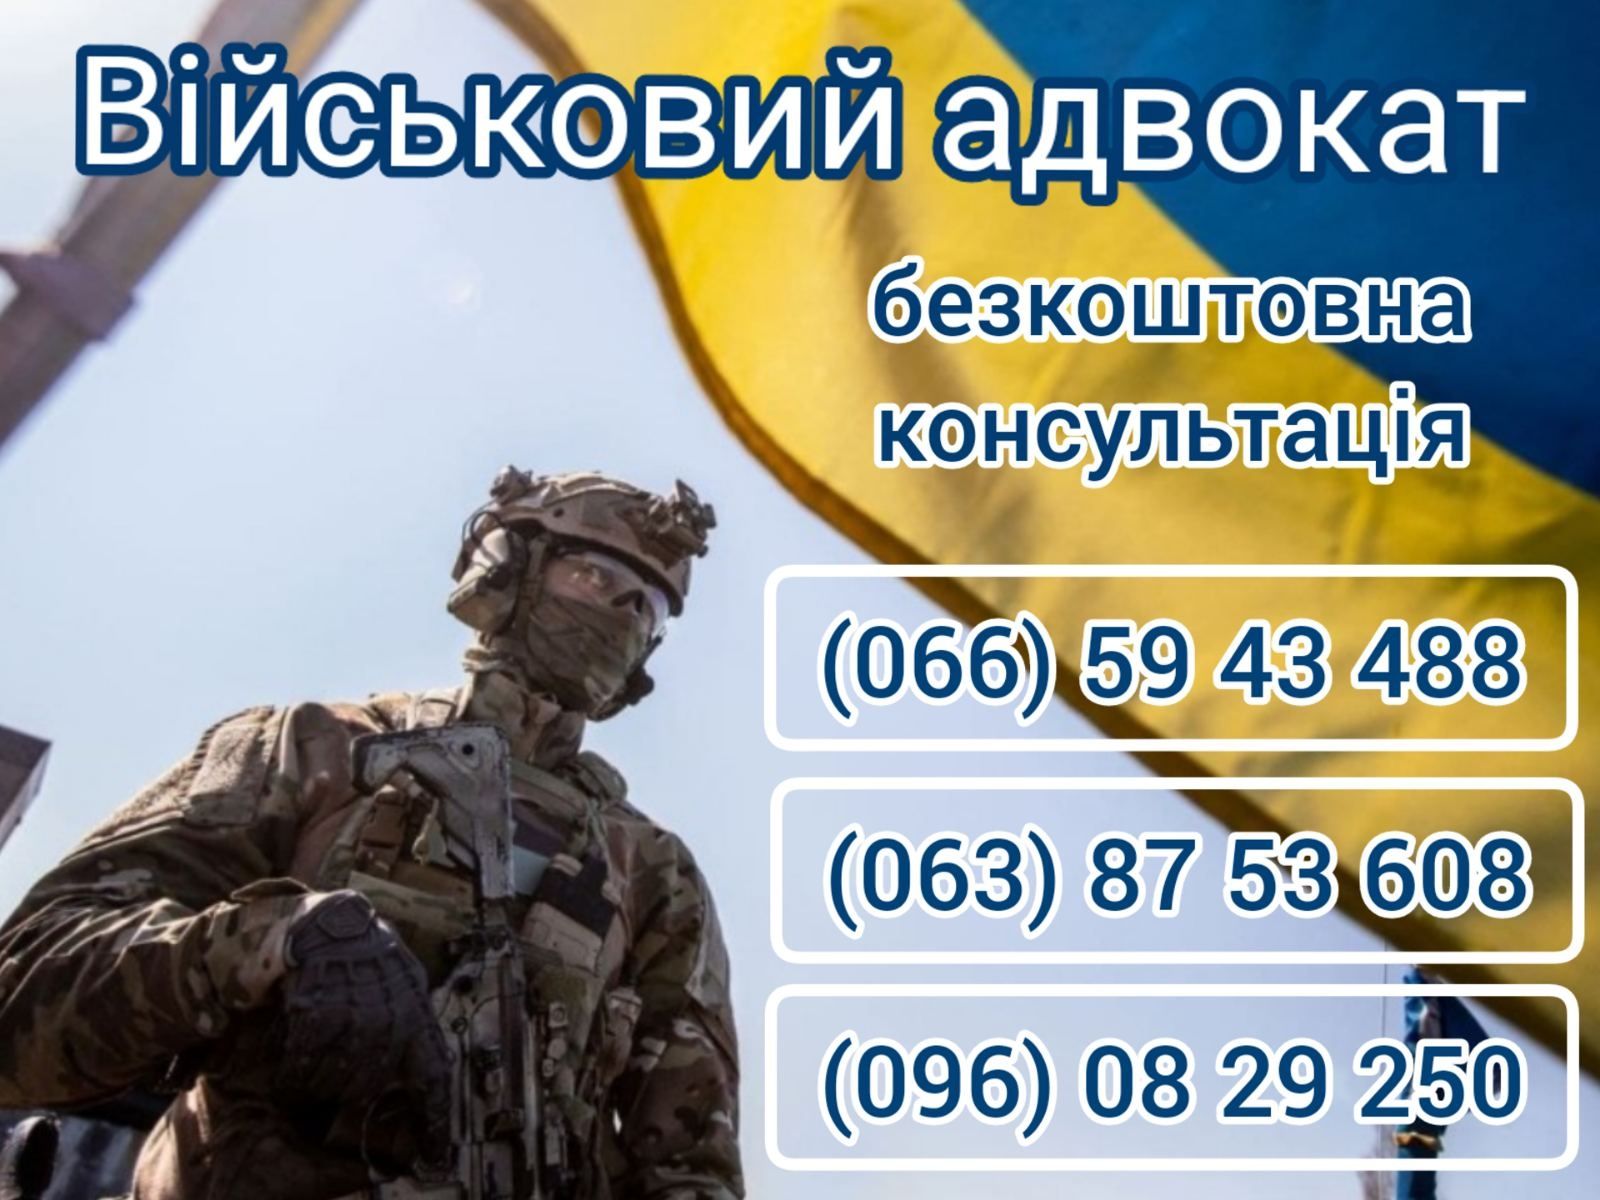 Военный адвокат Запорожская область: СЗЧ ВЛК - військовий юрист